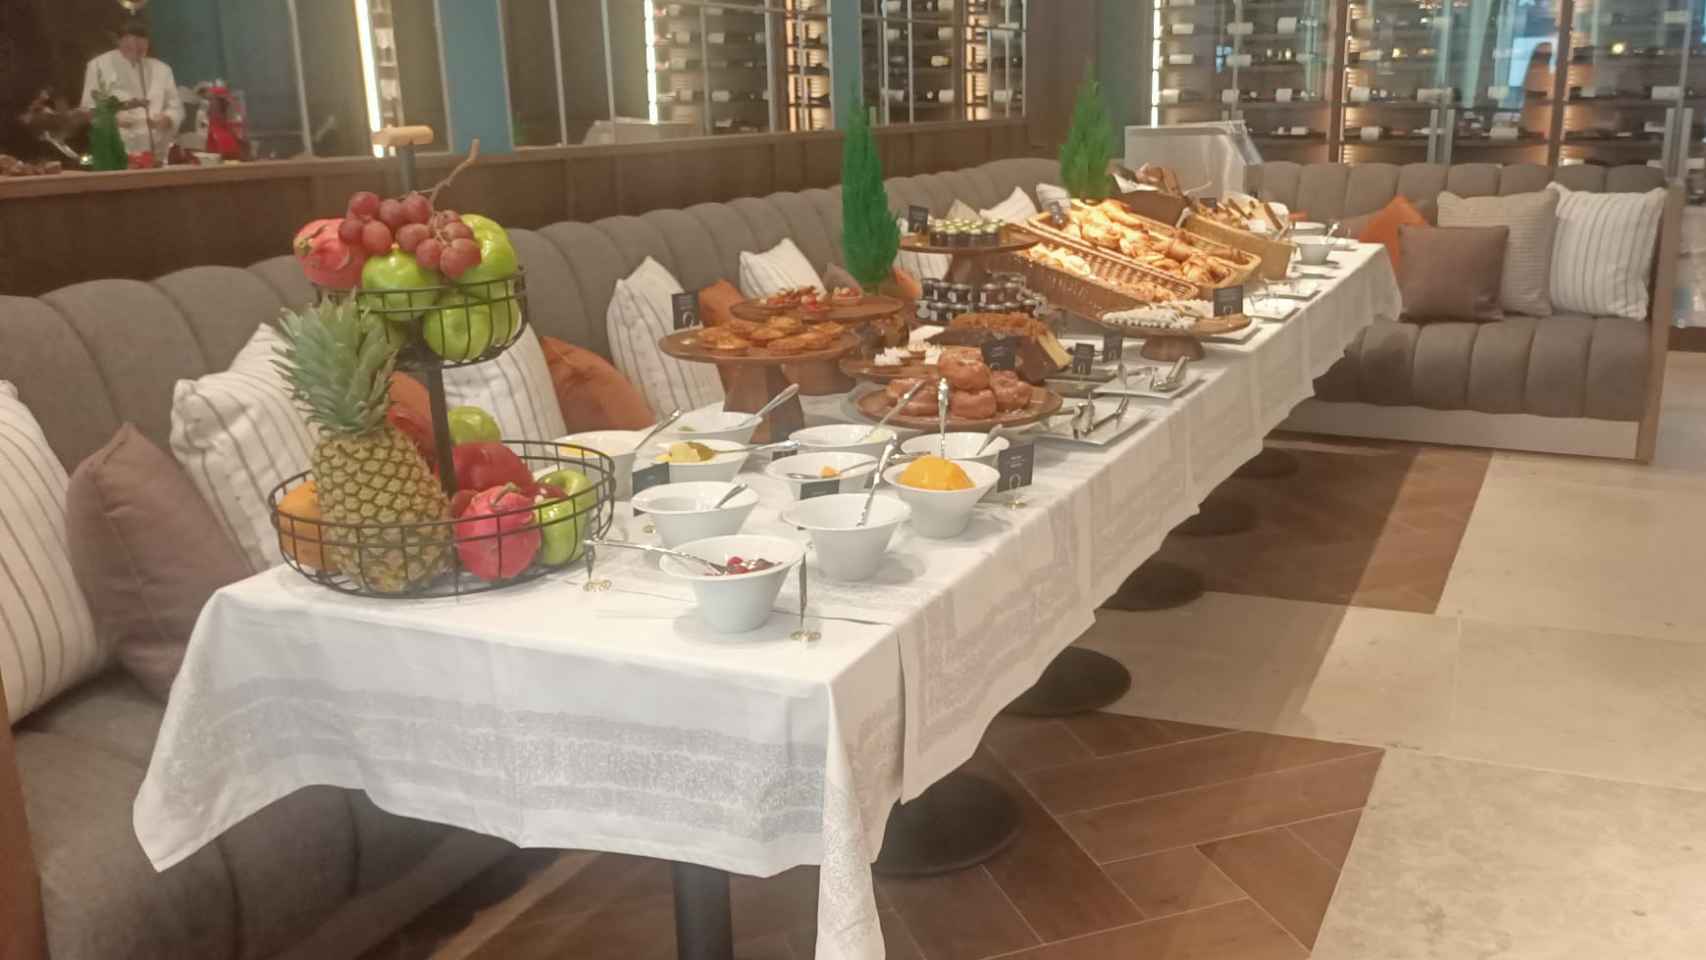 El buffet libre de QÚ para los huéspedes del hotel Marriott.